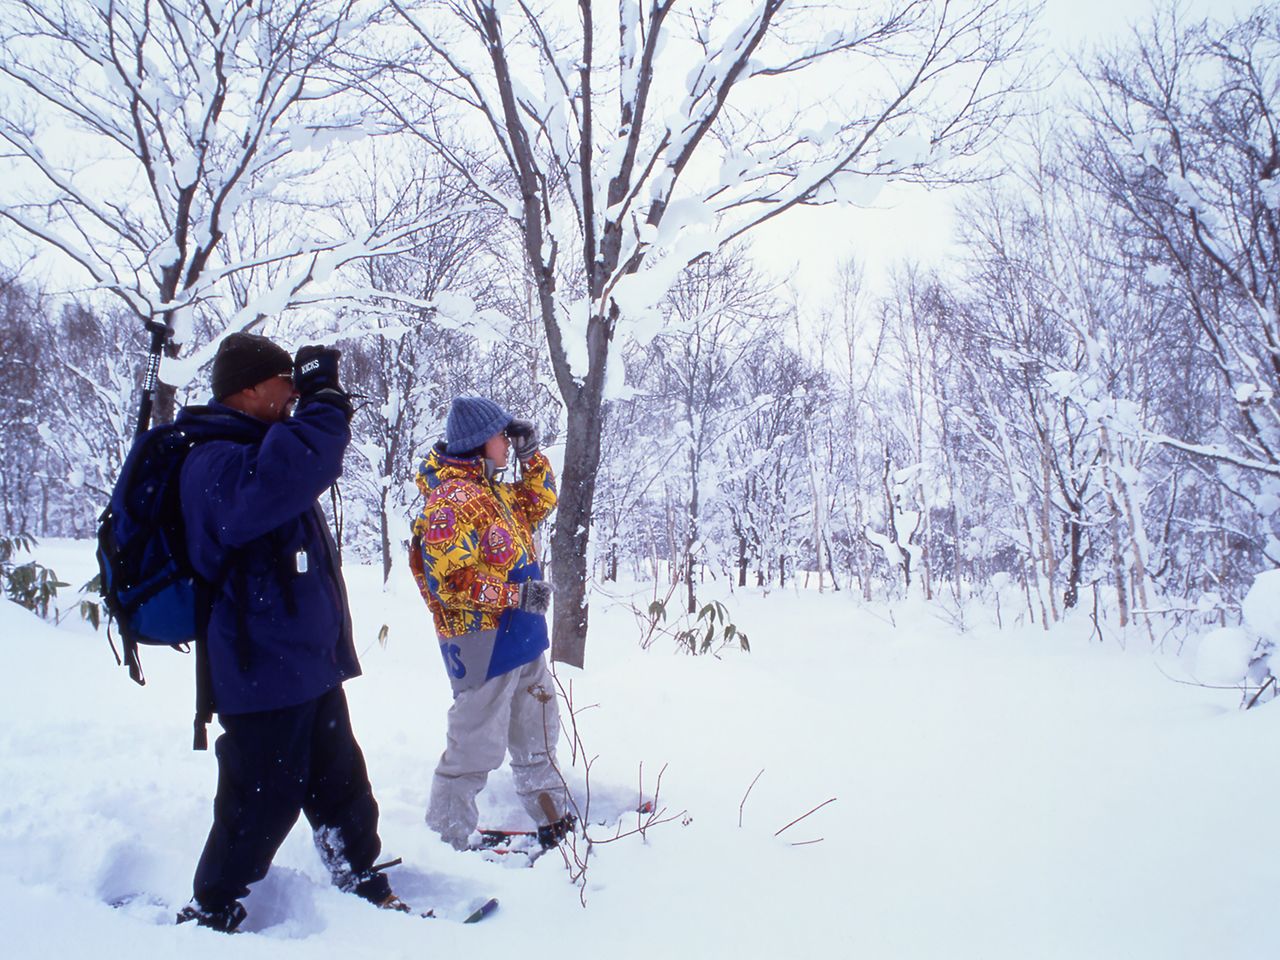 Caminata con raquetas de nieve por Niseko. Fotografía: Organismo de Promoción del Turismo de Hokkaidō.